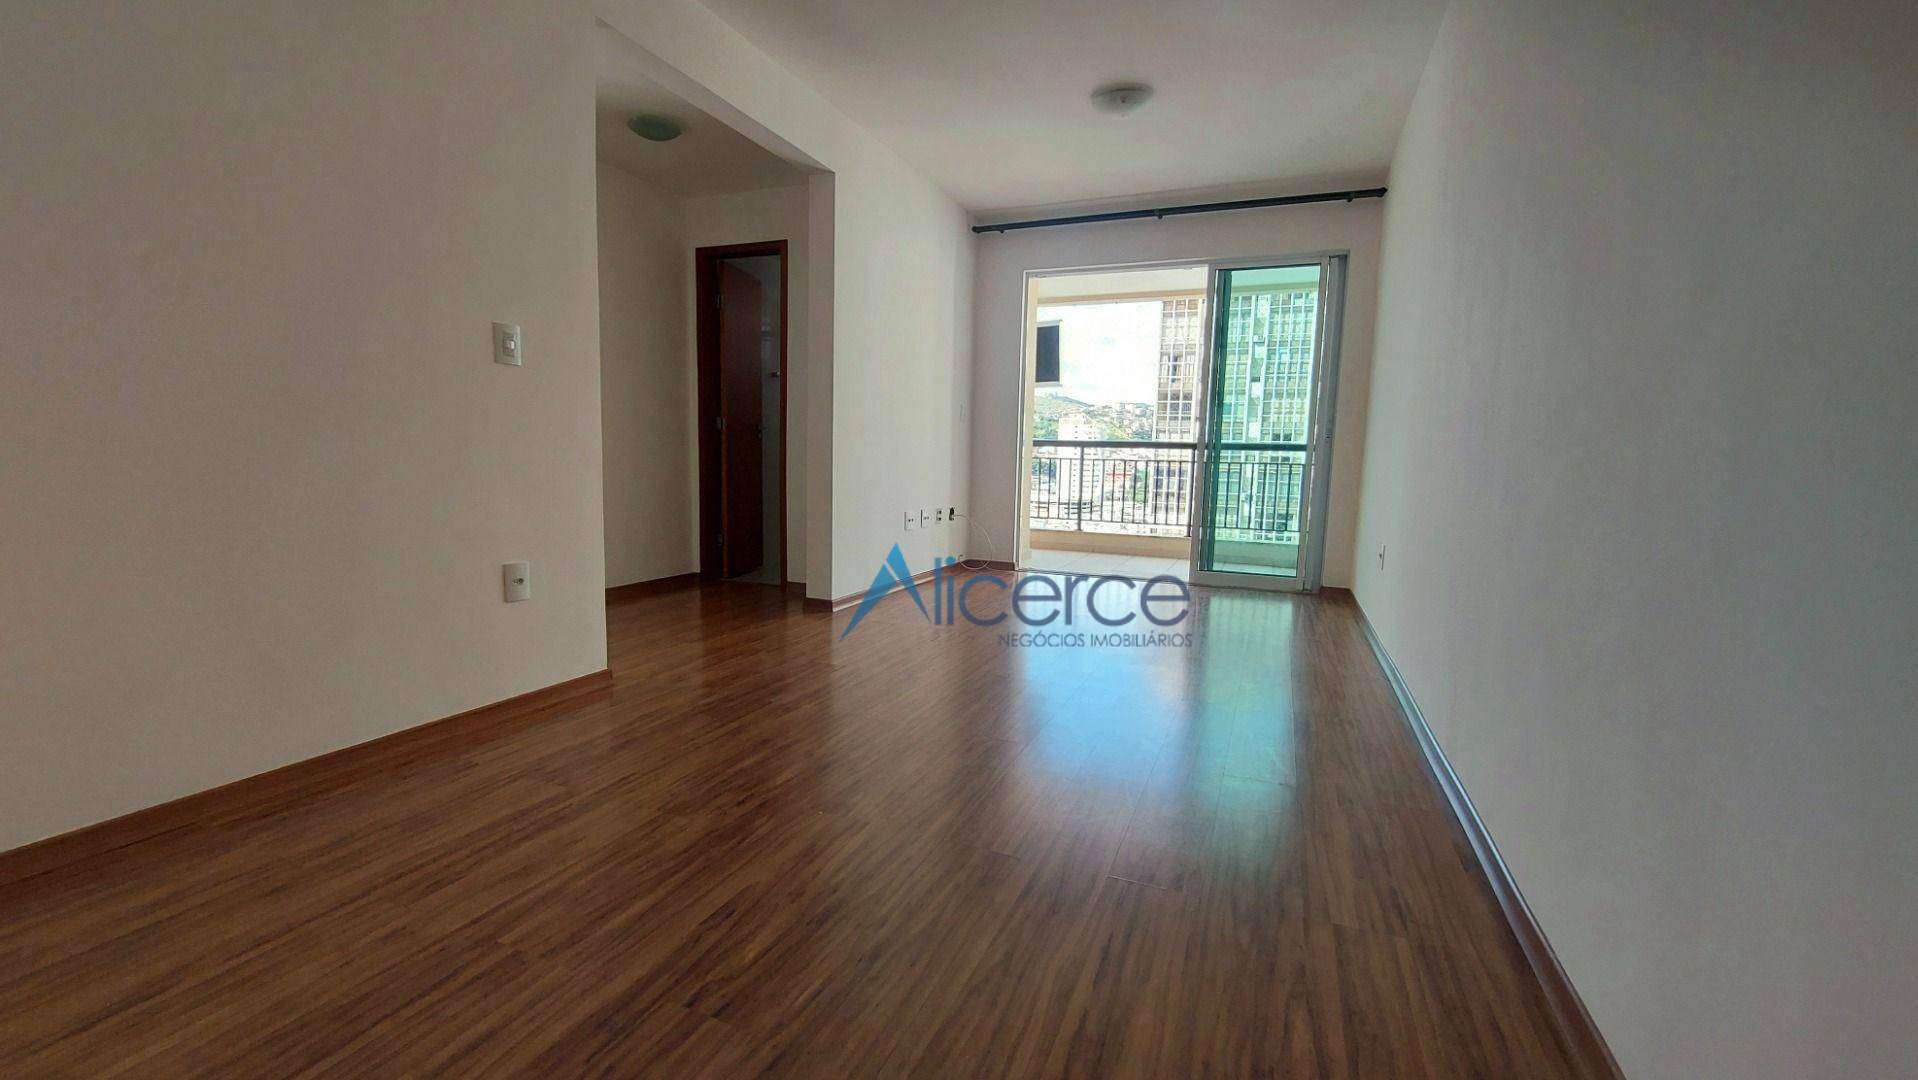 Apartamento com 2 quartos, suíte, elevador, garagem à venda, 70 m² por R$ 600.000 - Centro - Juiz de Fora/MG